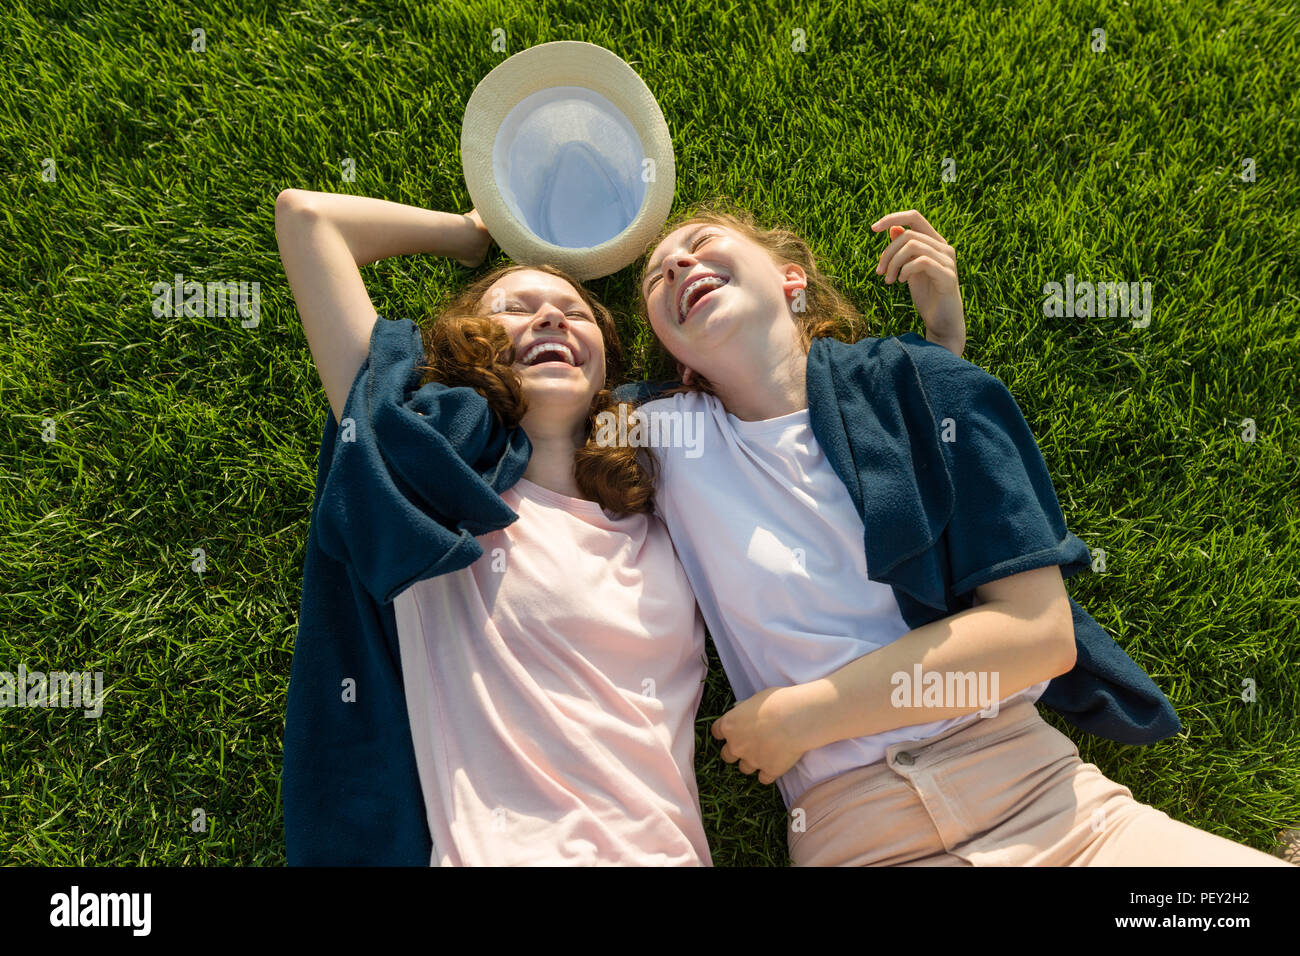 Le ragazze adolescenti divertendosi, giacciono sull'erba verde, ridere, vista dall'alto Foto Stock